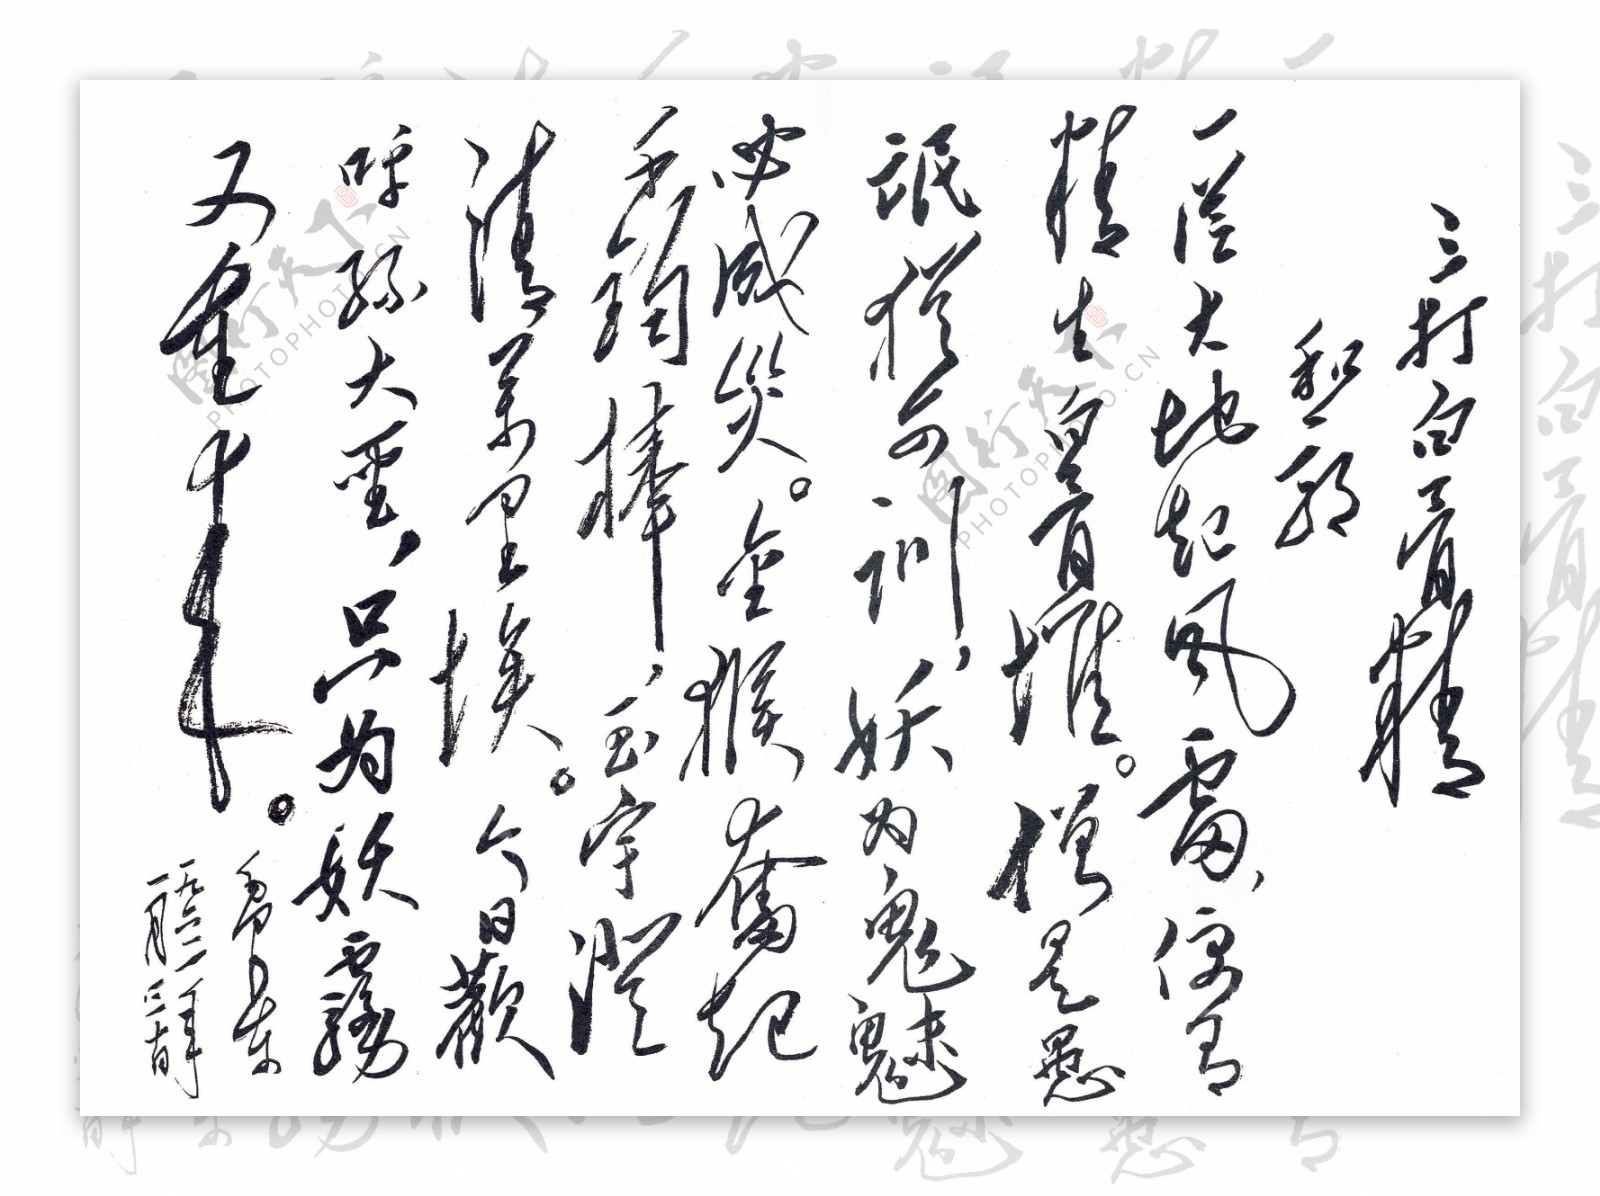 毛泽东诗词原稿手迹图片